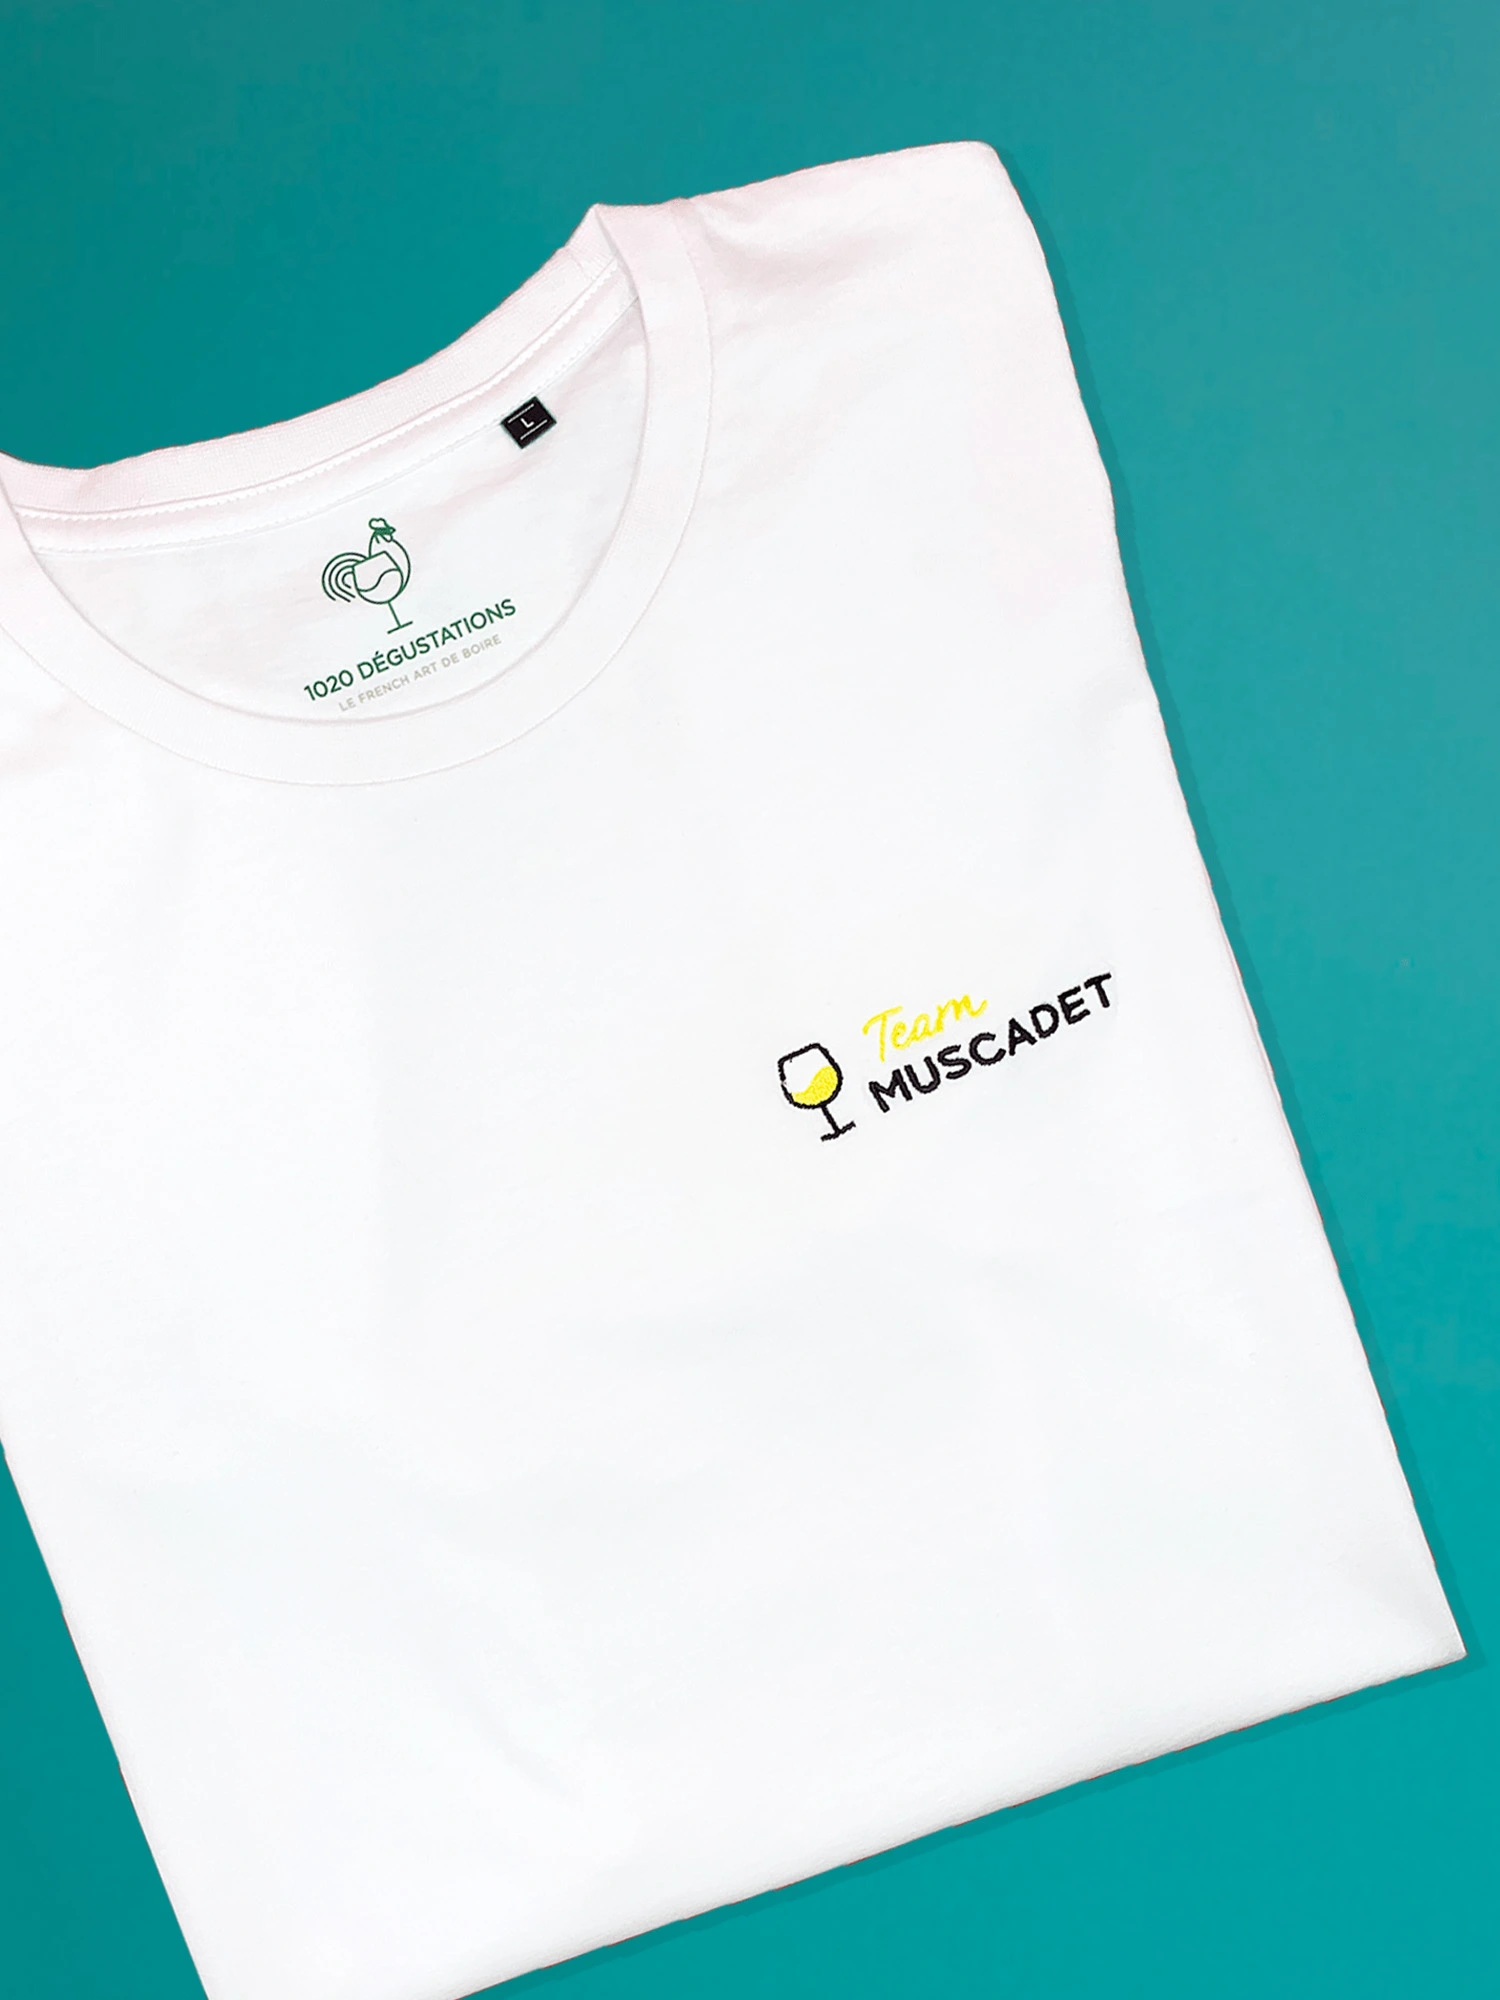 Tee-shirt 1020 - Team Muscadet